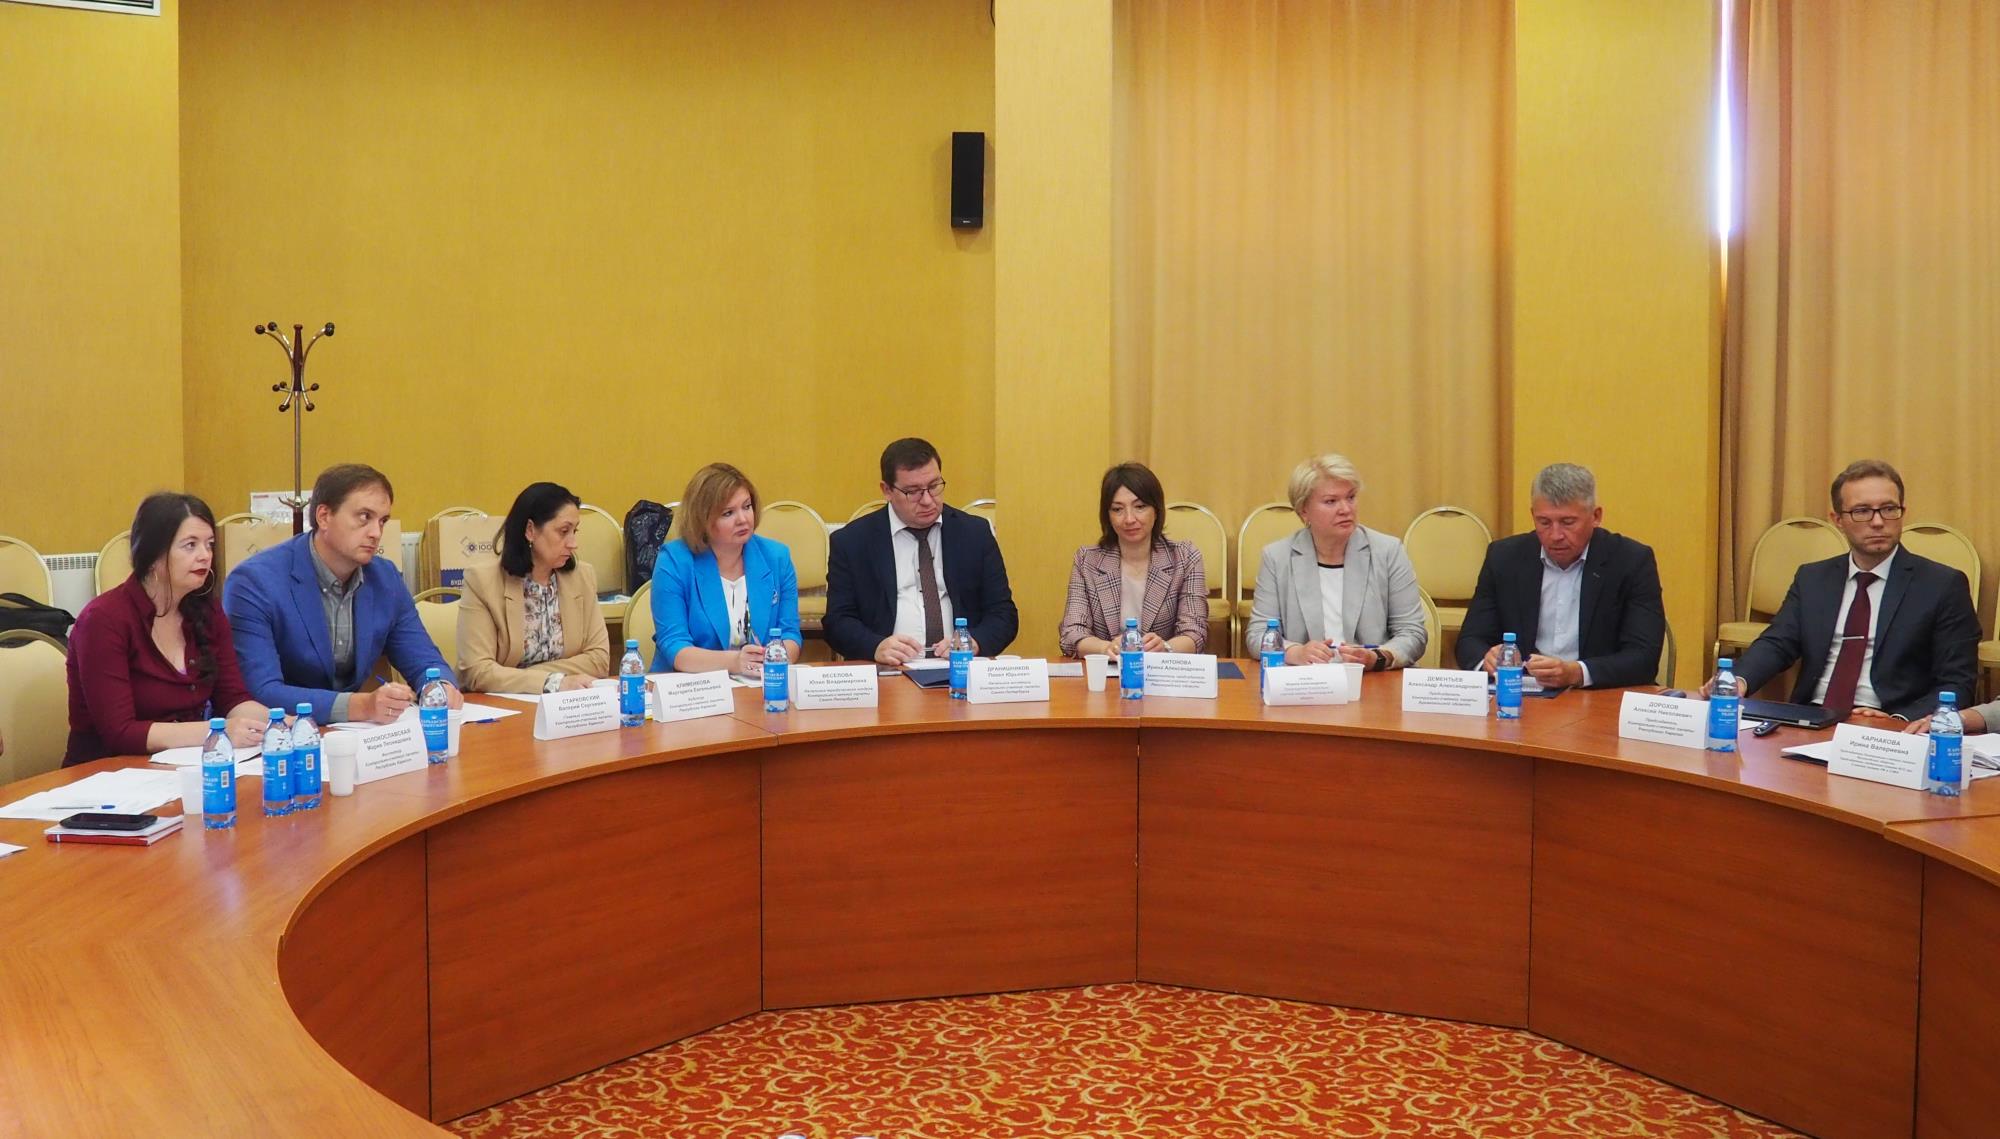 Представители Контрольно-счетной палаты Петербурга приняли участие в дискуссии по вопросам классификации нарушений